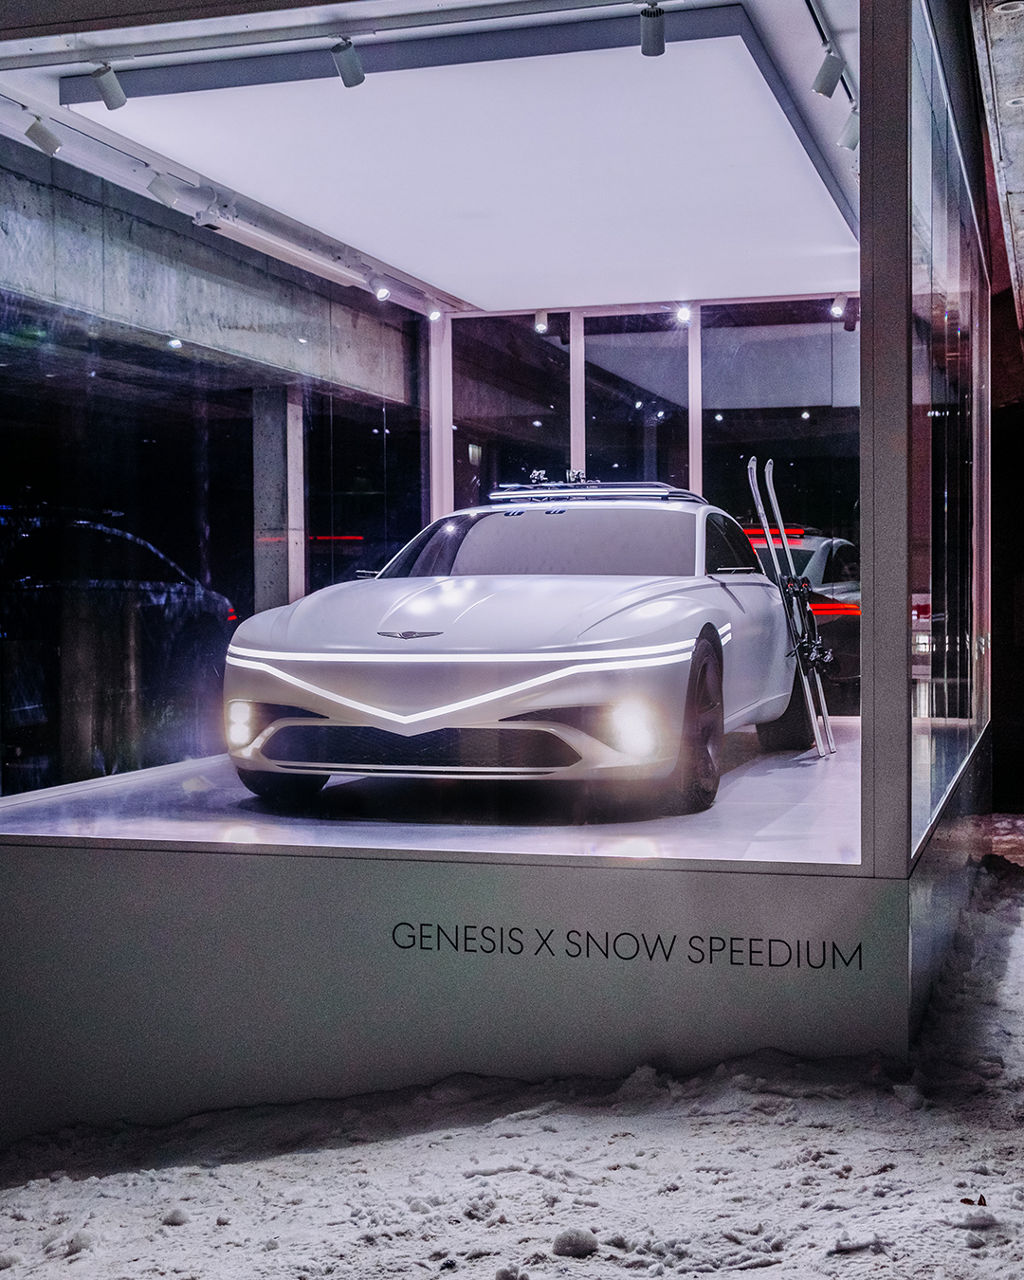 Gläserner Ausstellungsraum mit dem Genesis X Snow Speedium umgeben von Schnee